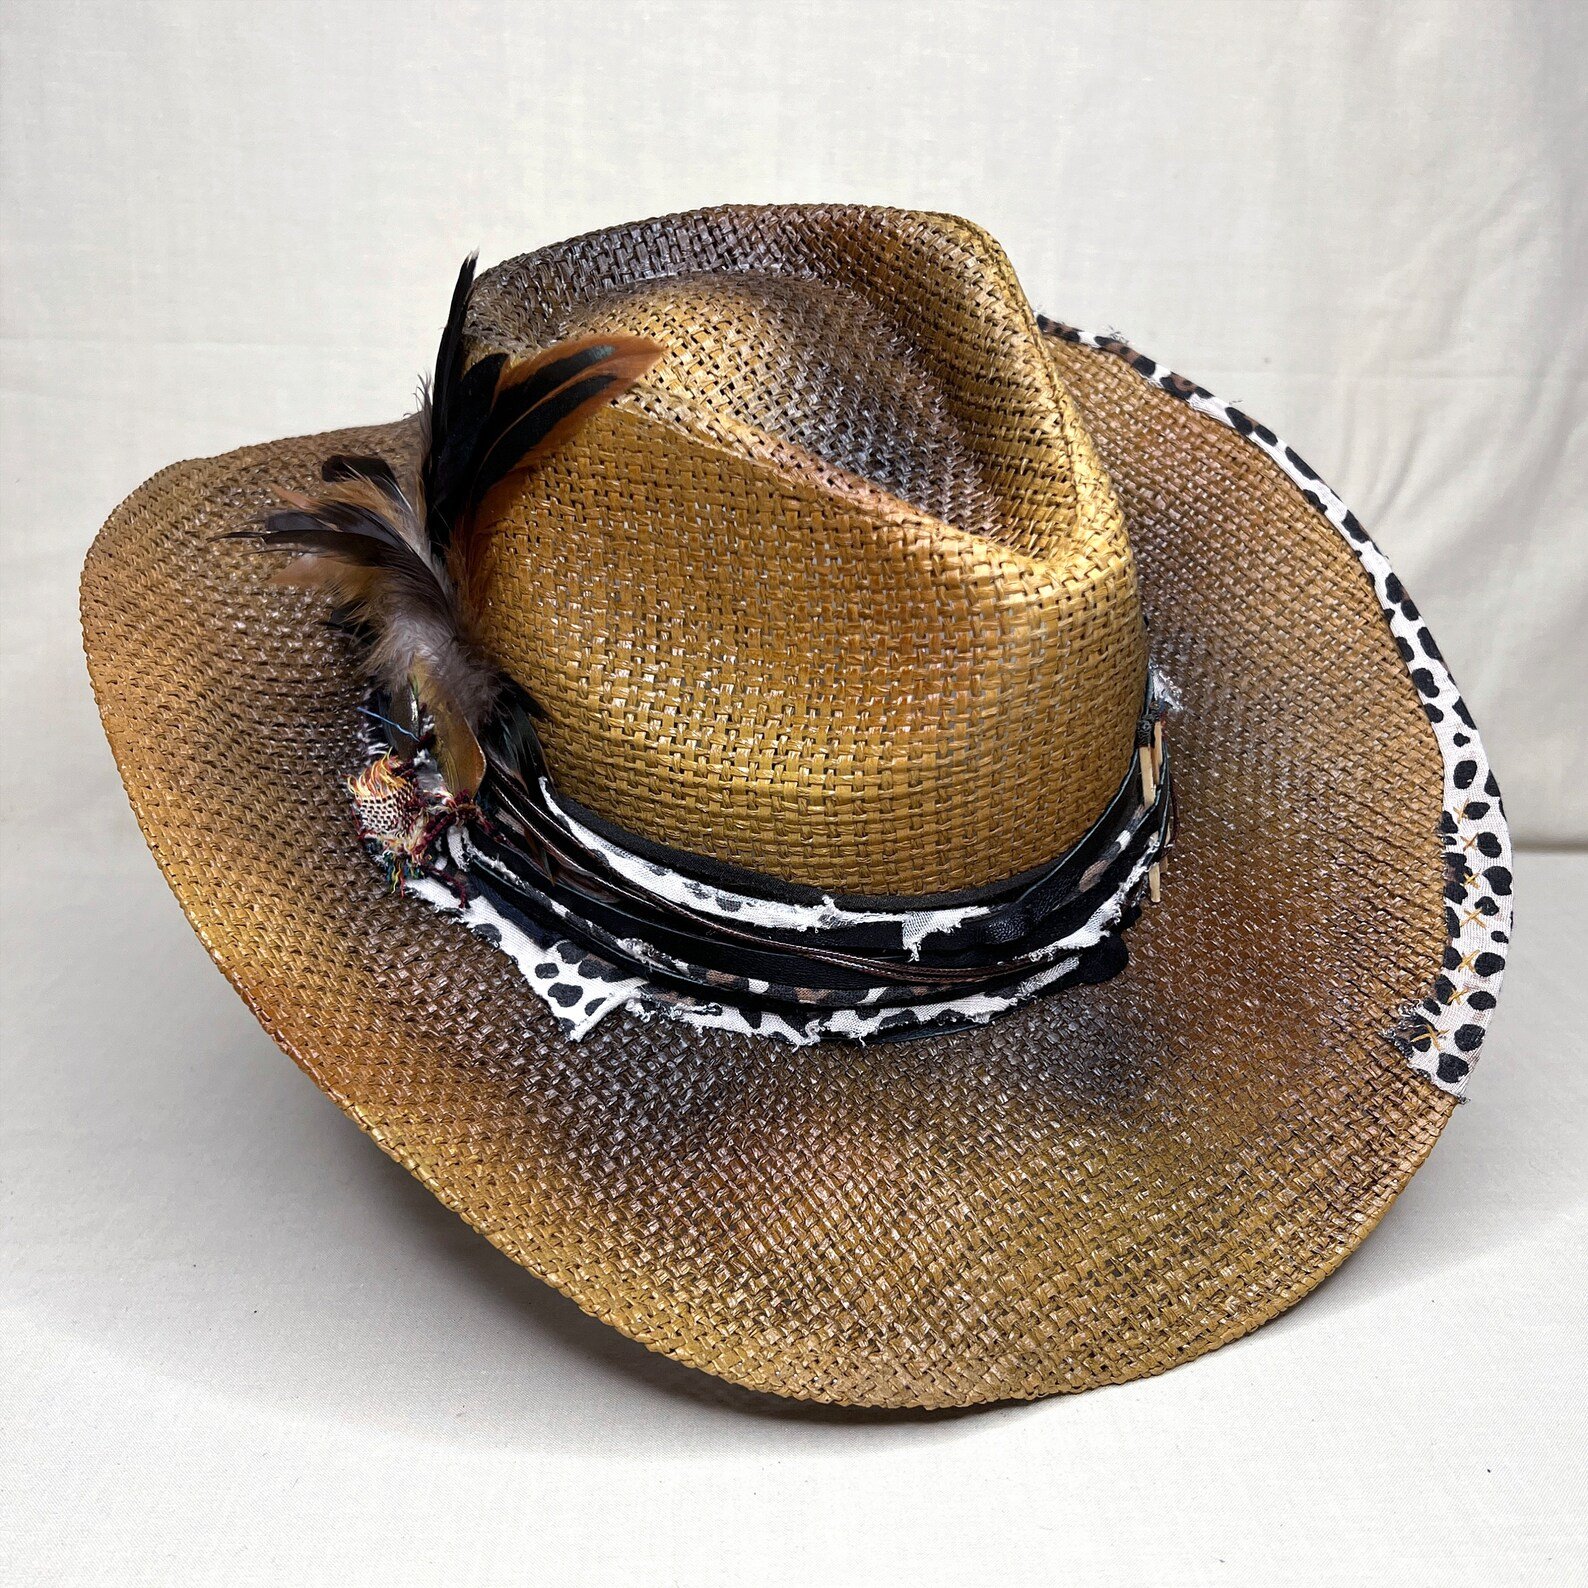  Tamaño S|M | Sombrero Marrón De Ala Ancha Estilo Cowboy Pintado A Mano | Banda De Diseño Personalizado Emvejecida | Plumas A Juego | Diseño Exclusivo De Tocado.